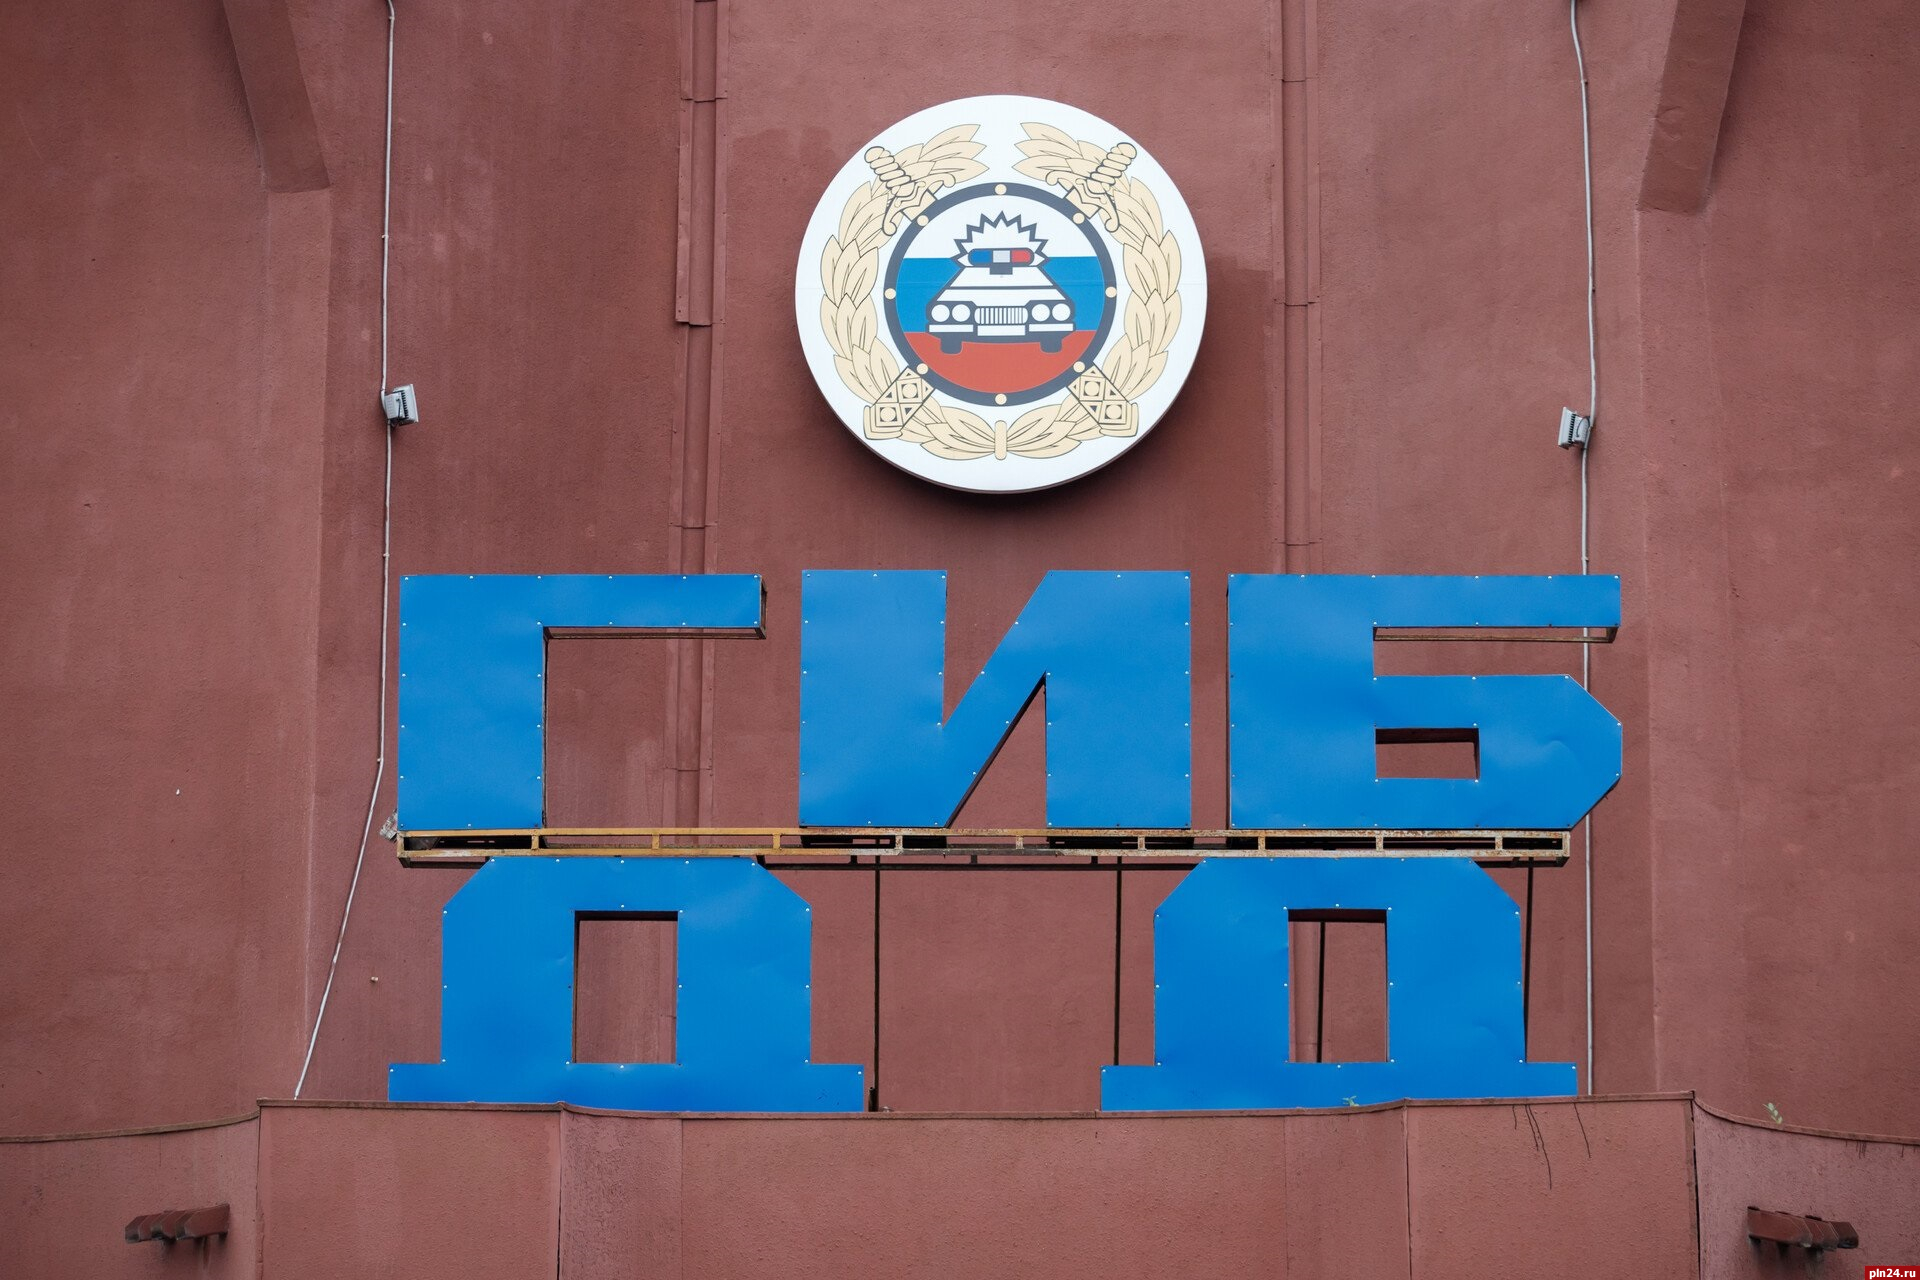 Свыше 20 человек получили травмы в ДТП на дорогах Псковской области за неделю